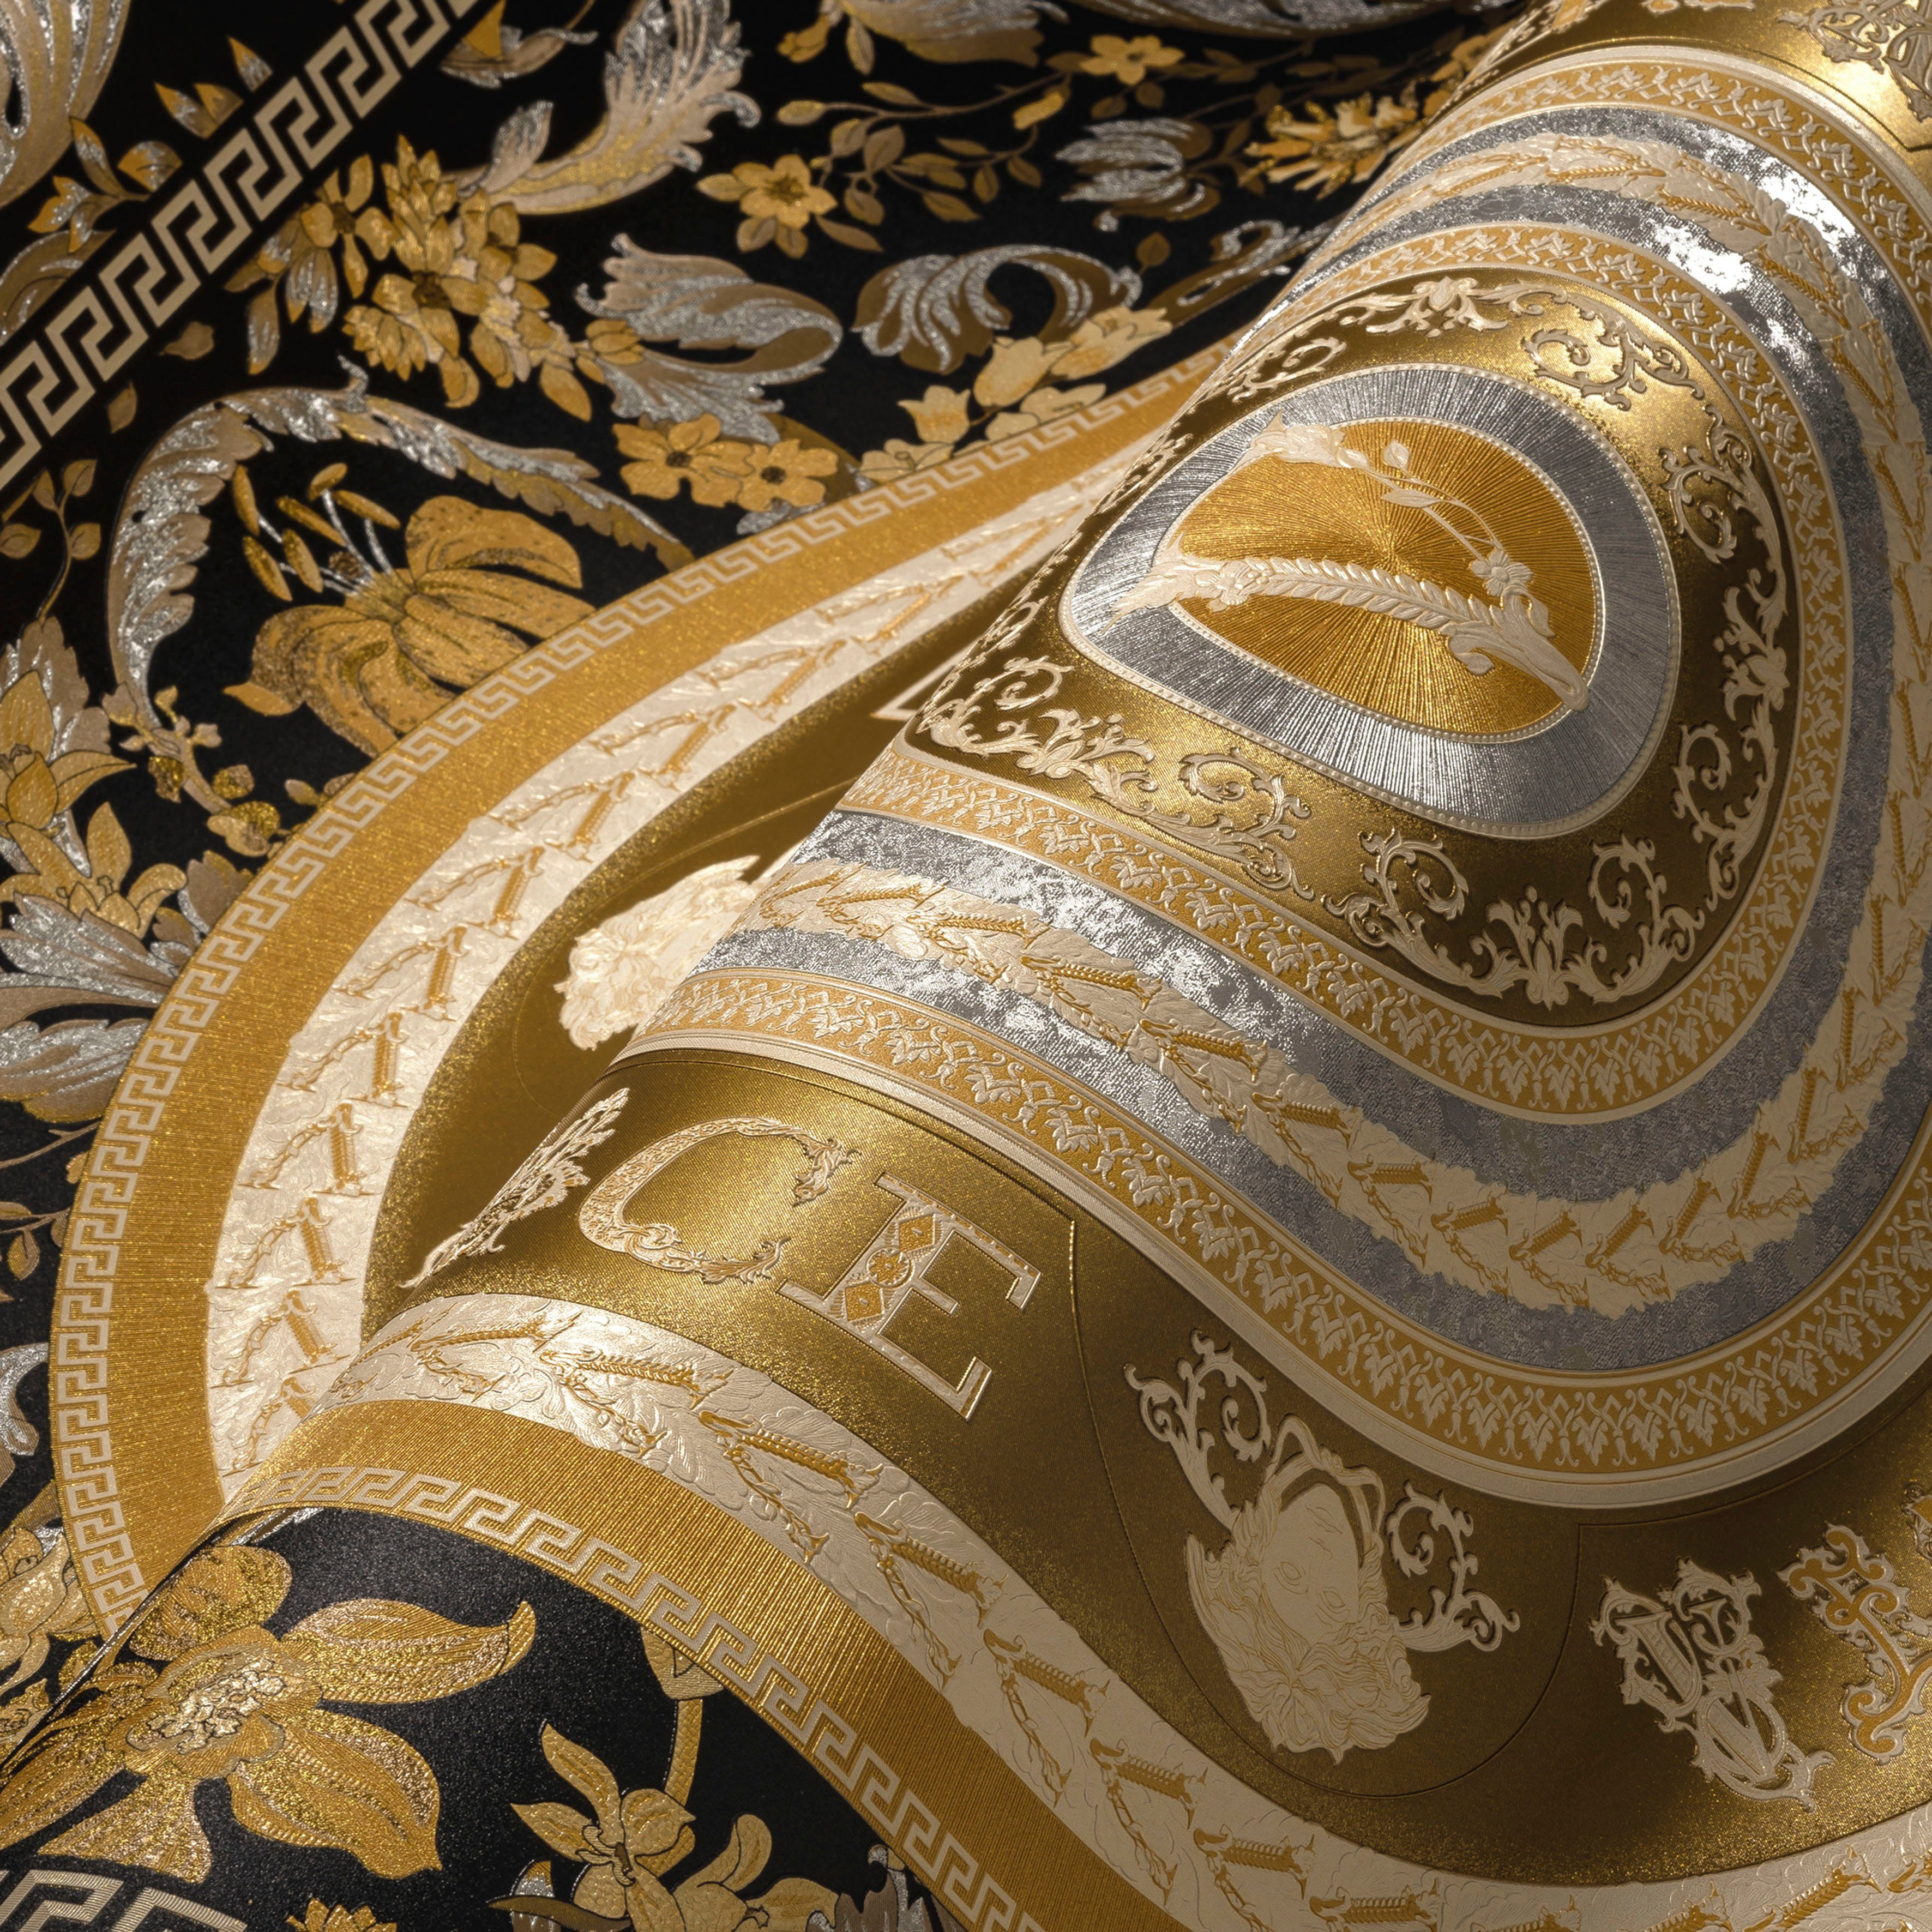 St), Fliesen-Tapete Designertapete, goldfarben/schwarz/silberfarben Wallpaper Floral Versace Versace auffallende Design, leicht 5 glänzend, leicht strukturiert, (1 Vliestapete